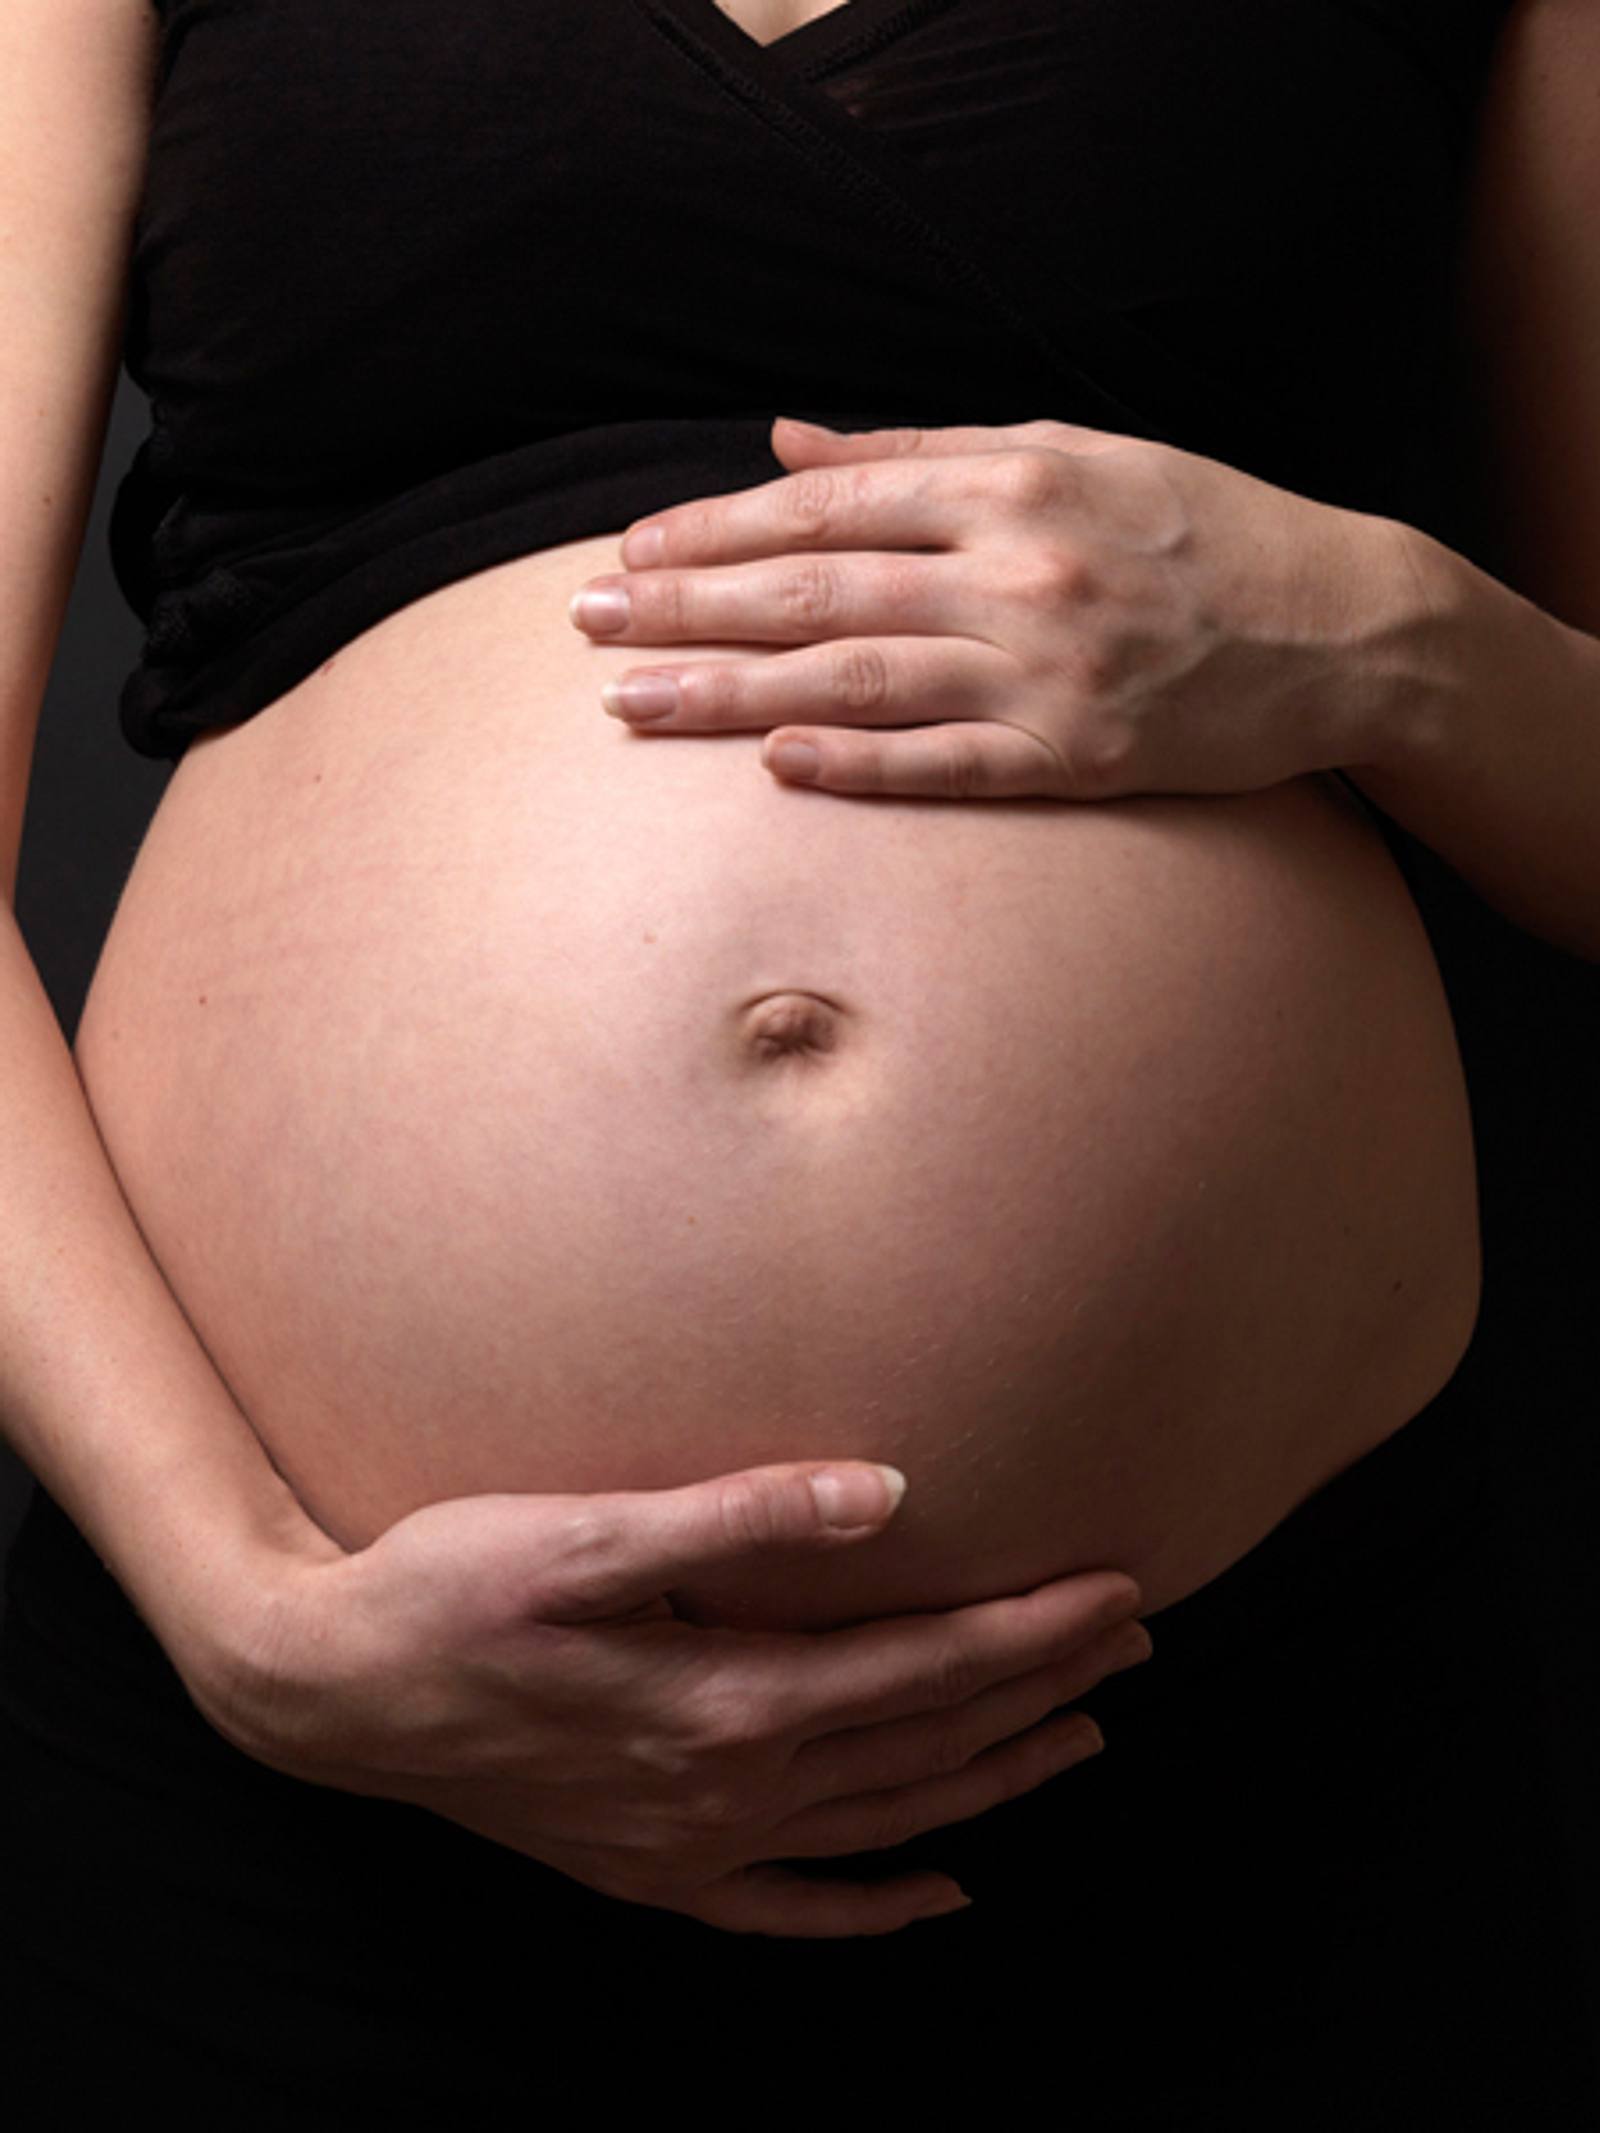 Wie merkt man ob man trotz spirale schwanger ist